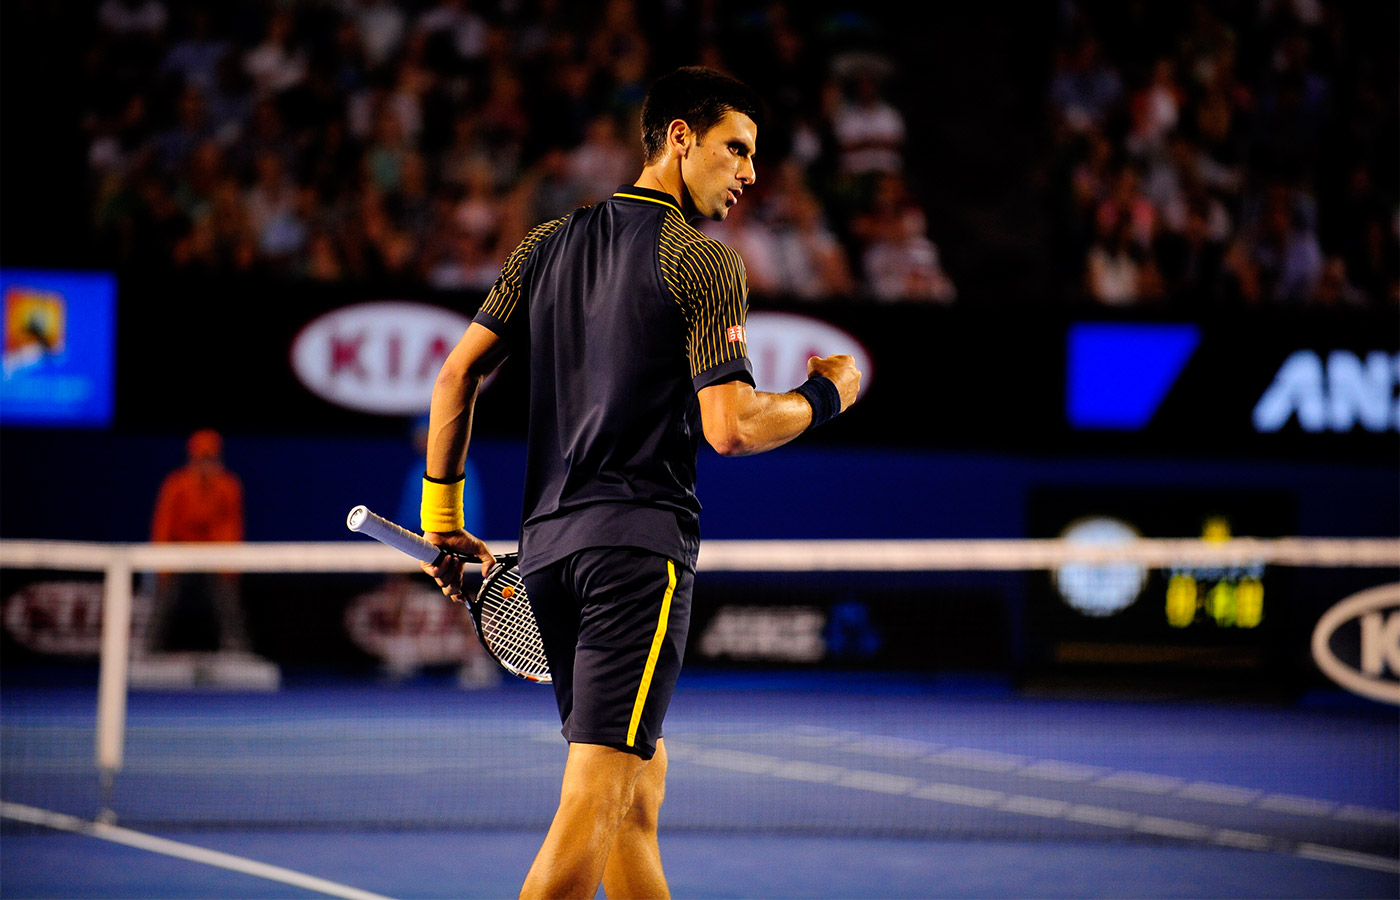 Australian Open 2013